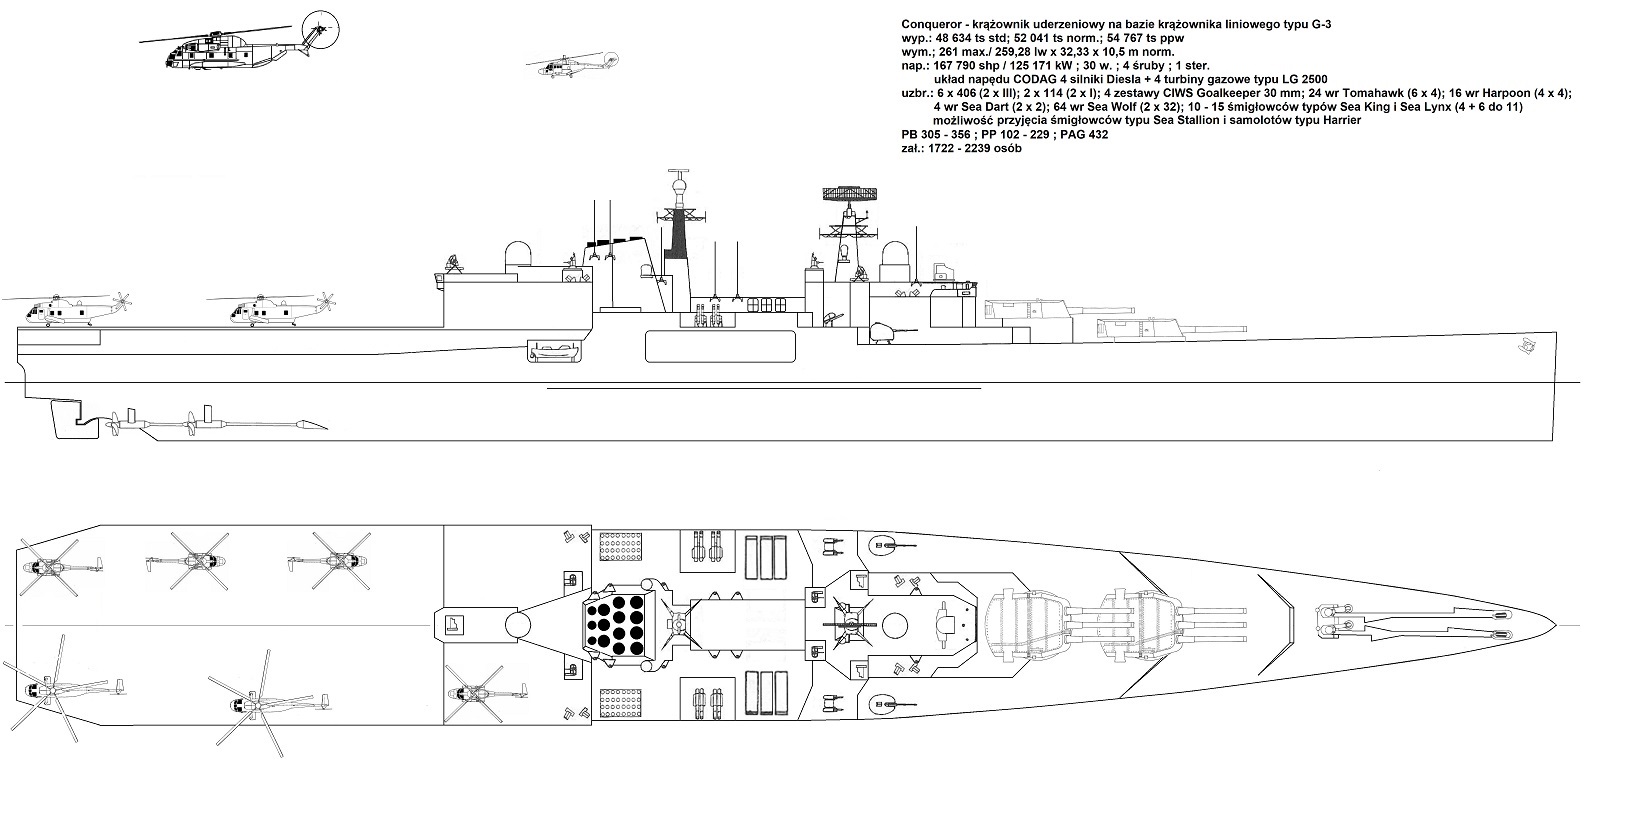 Krążownik G 3. 1990.1 mini.jpg